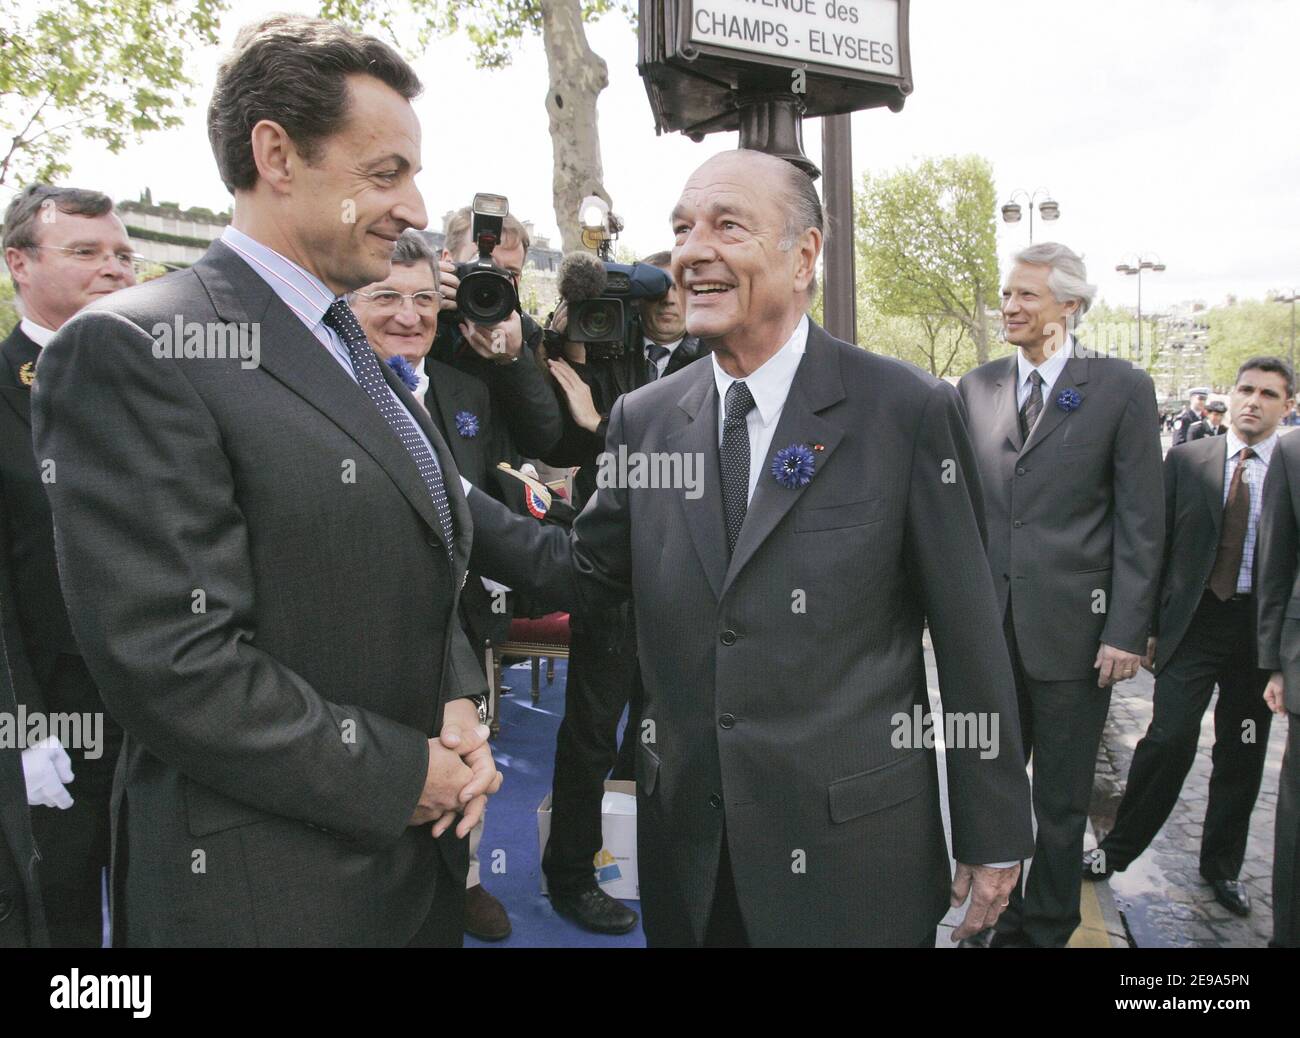 Le président français Jacques Chirac, le ministre de l'intérieur Nicolas Sarkozy et le Premier ministre Dominique de Villepin assistent à la cérémonie marquant la fin de la Seconde Guerre mondiale qui s'est tenue à l'Arc de Triomphe à Paris, en France, le 8 mai 2006. Photo de Gilles Bassignac/Pool/ABACAPRESS.COM Banque D'Images